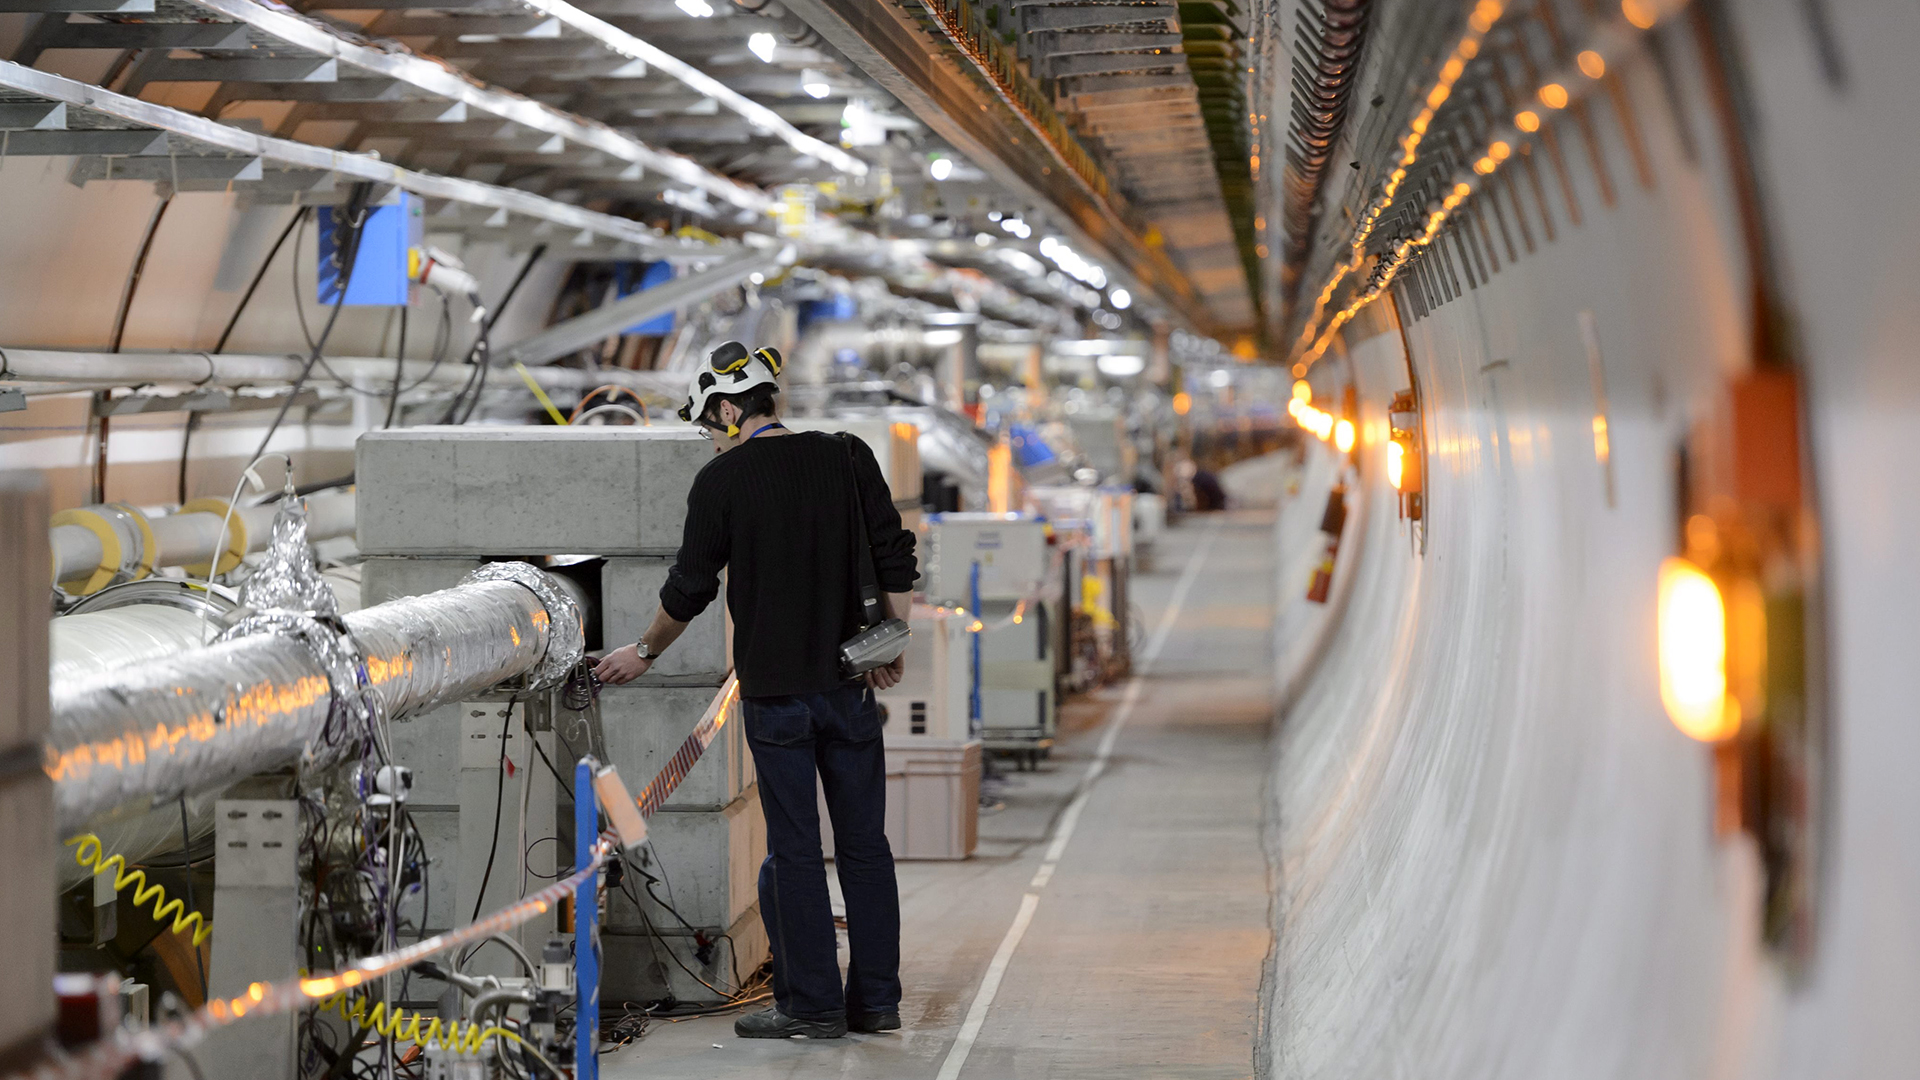 Ein Techniker arbeitet am Cern, der Europäischen Organisation für Kernforschung, in einem Tunnel für einen Teilchenbeschleuniger, bei Genf, Schweiz. | picture alliance / Laurent Gilli